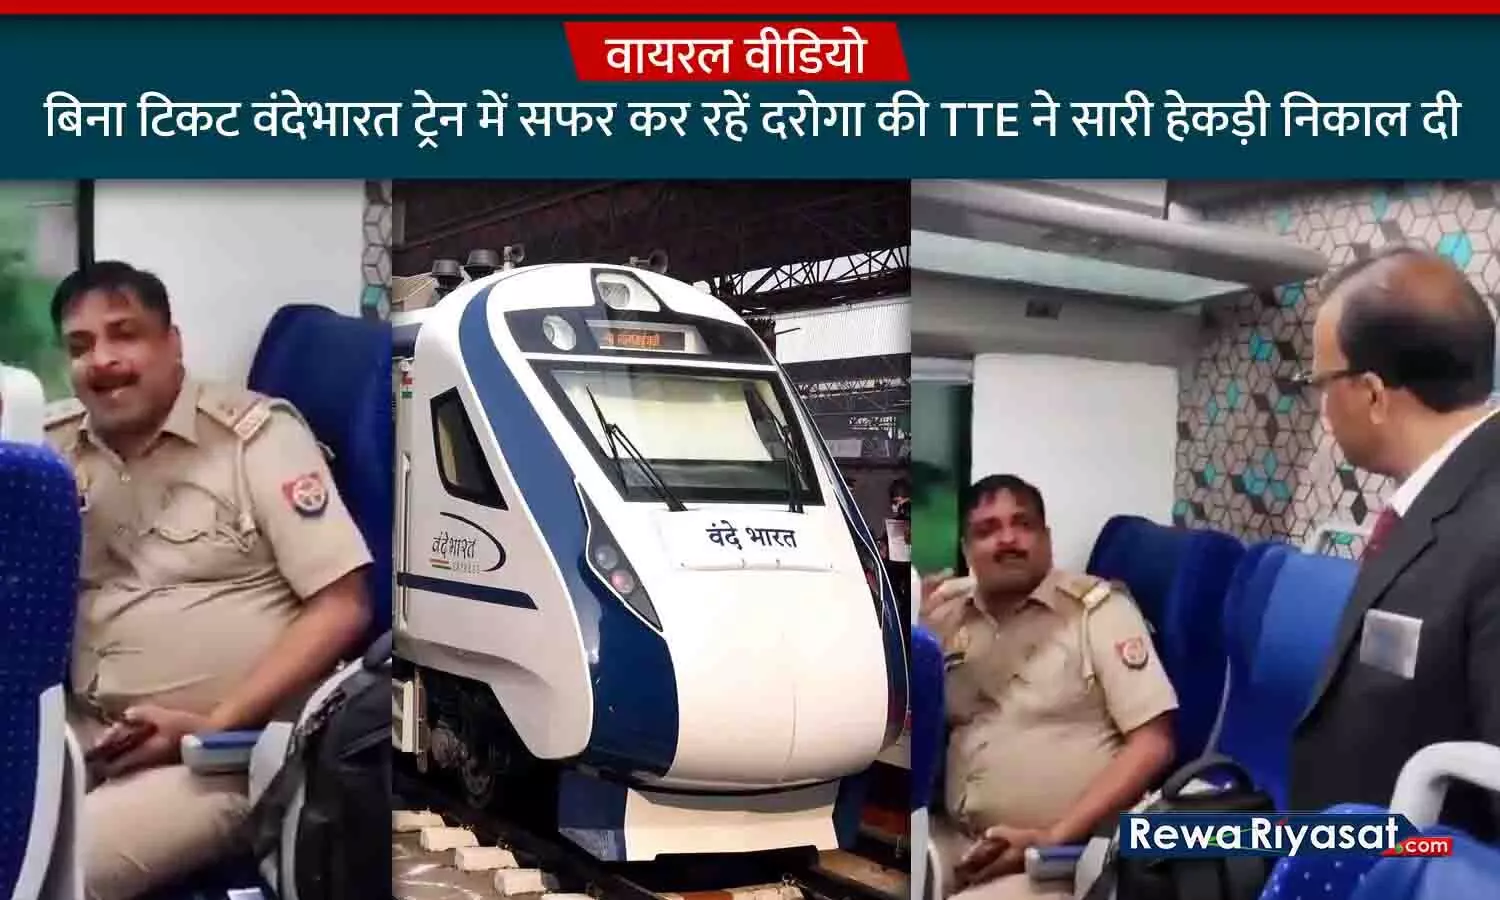 VIDEO: बिना टिकट और बड़ी ठाठ के साथ वंदेभारत ट्रेन में सफर कर रहे थे दरोगा साहेब, TTE ने सारी हेकड़ी निकाल दी